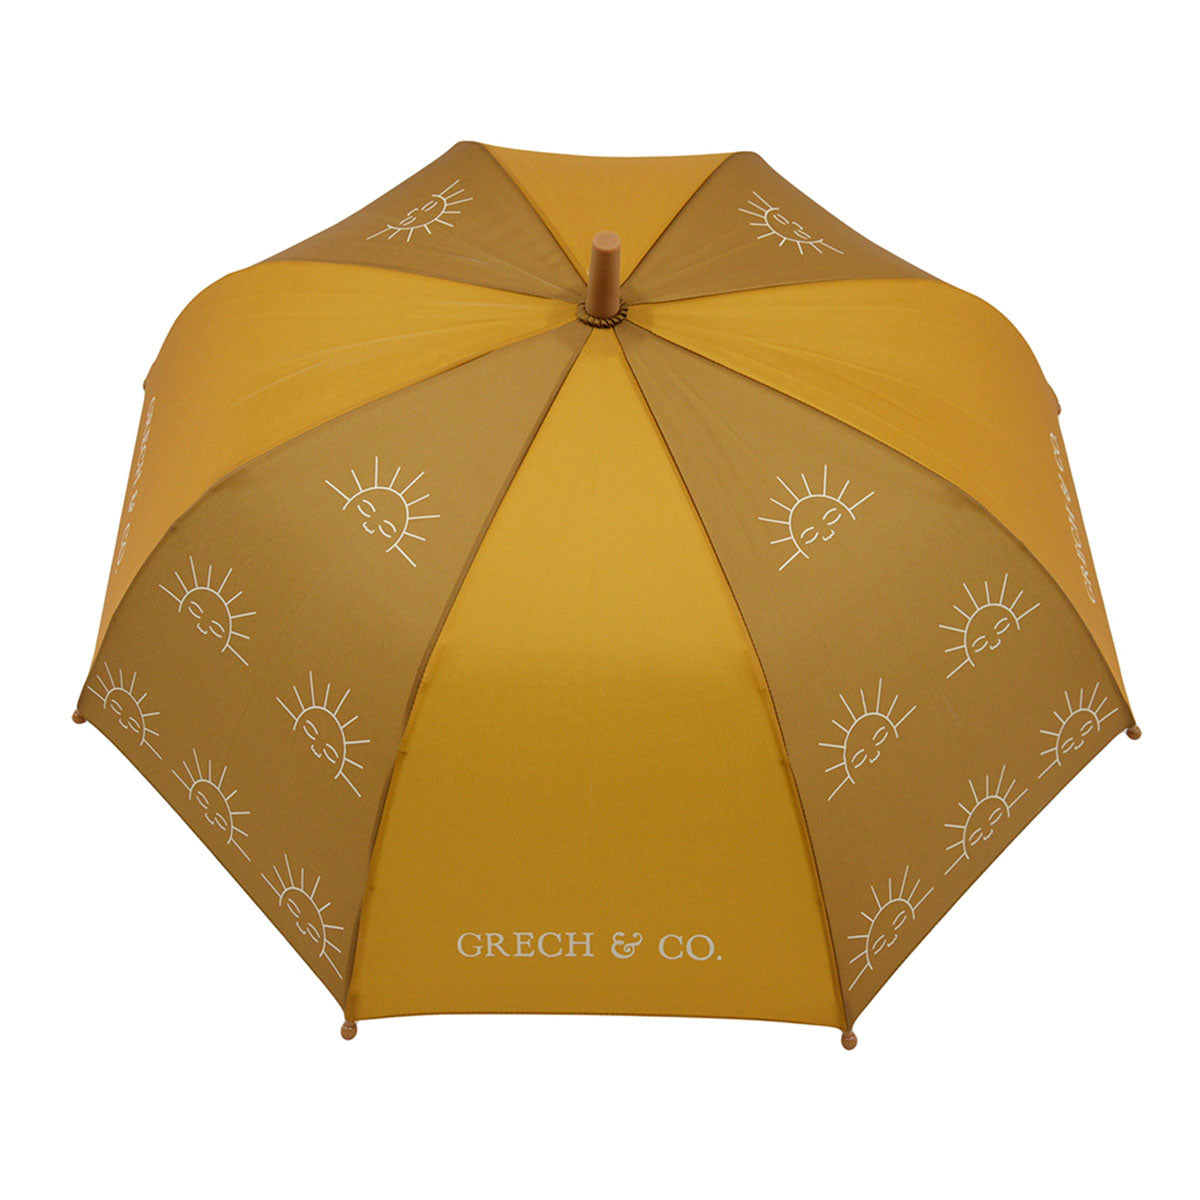 Bij regen én zonneschijn zorgt de duurzame Grech & co. paraplu kids wheat ervoor dat je stijlvol voor de dag komt. Leuk voor kinderen die willen matchen met hun grote broer/zus, mama of papa. VanZus